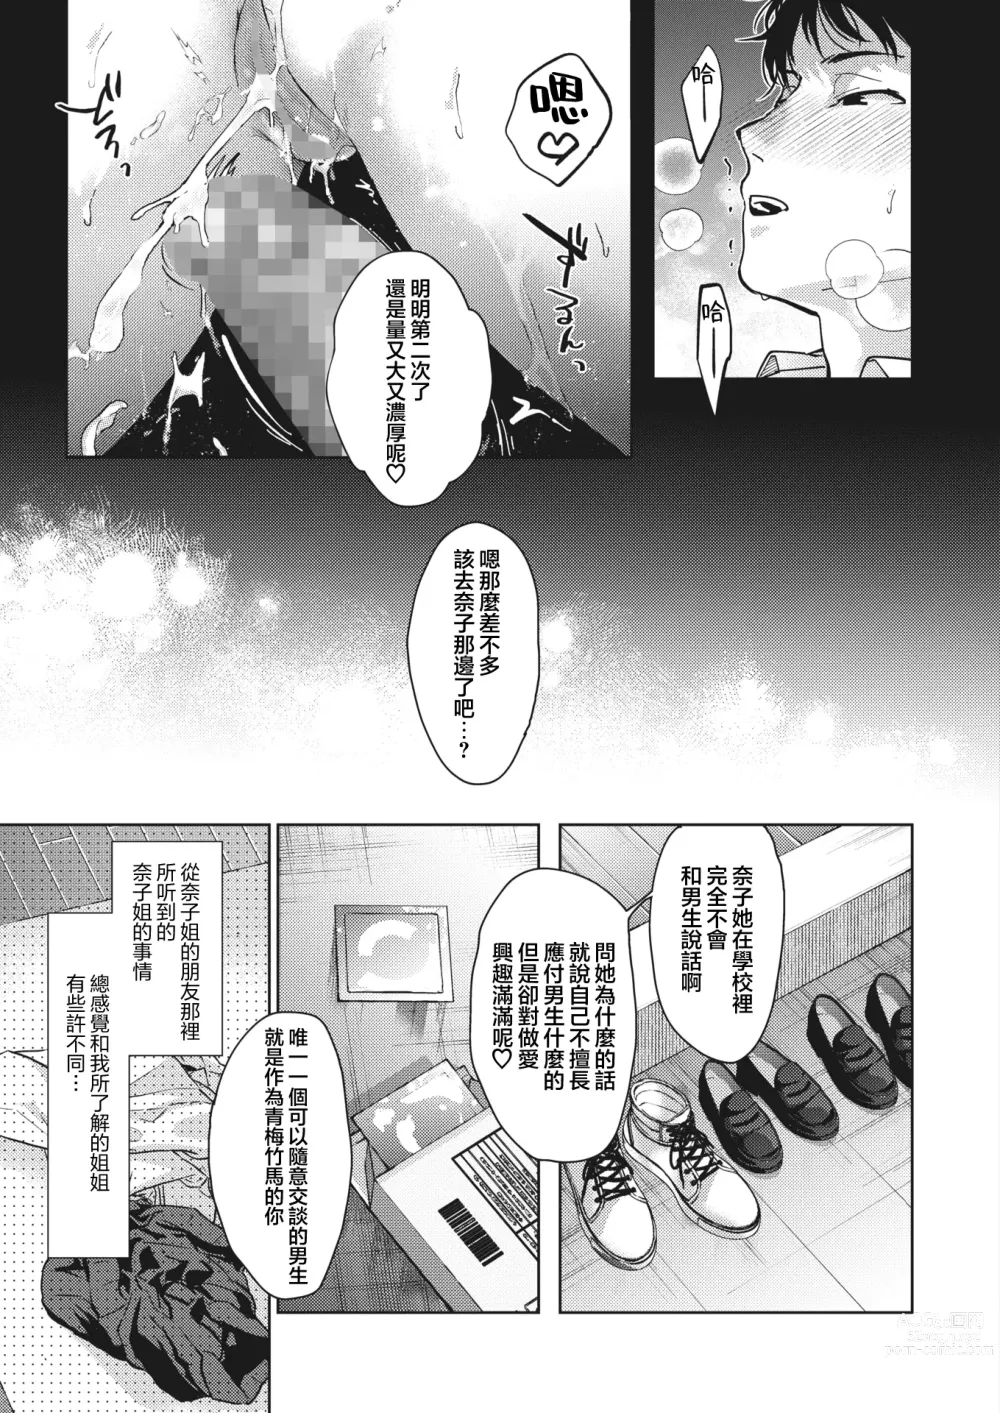 Page 26 of manga Onee-chan-tachi to Issho ni Zenpen